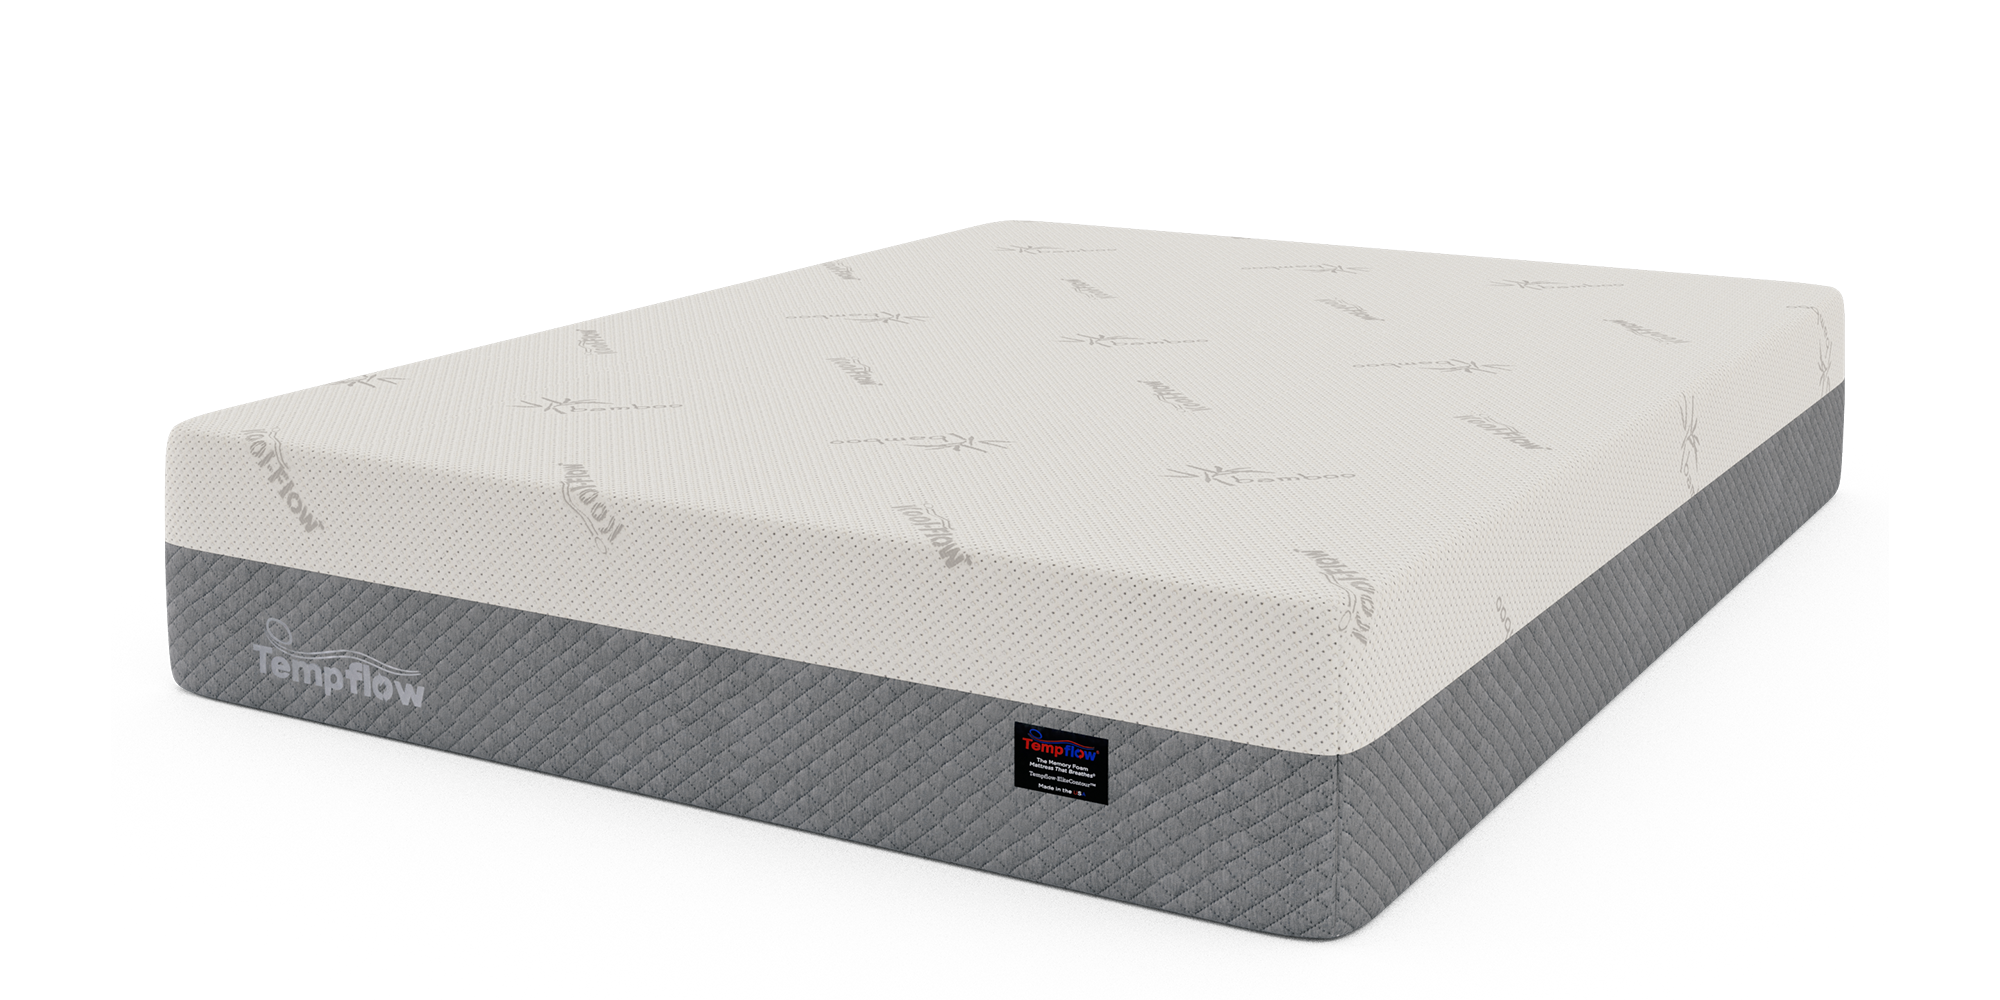 Plush Comfort Memory Foam Bed